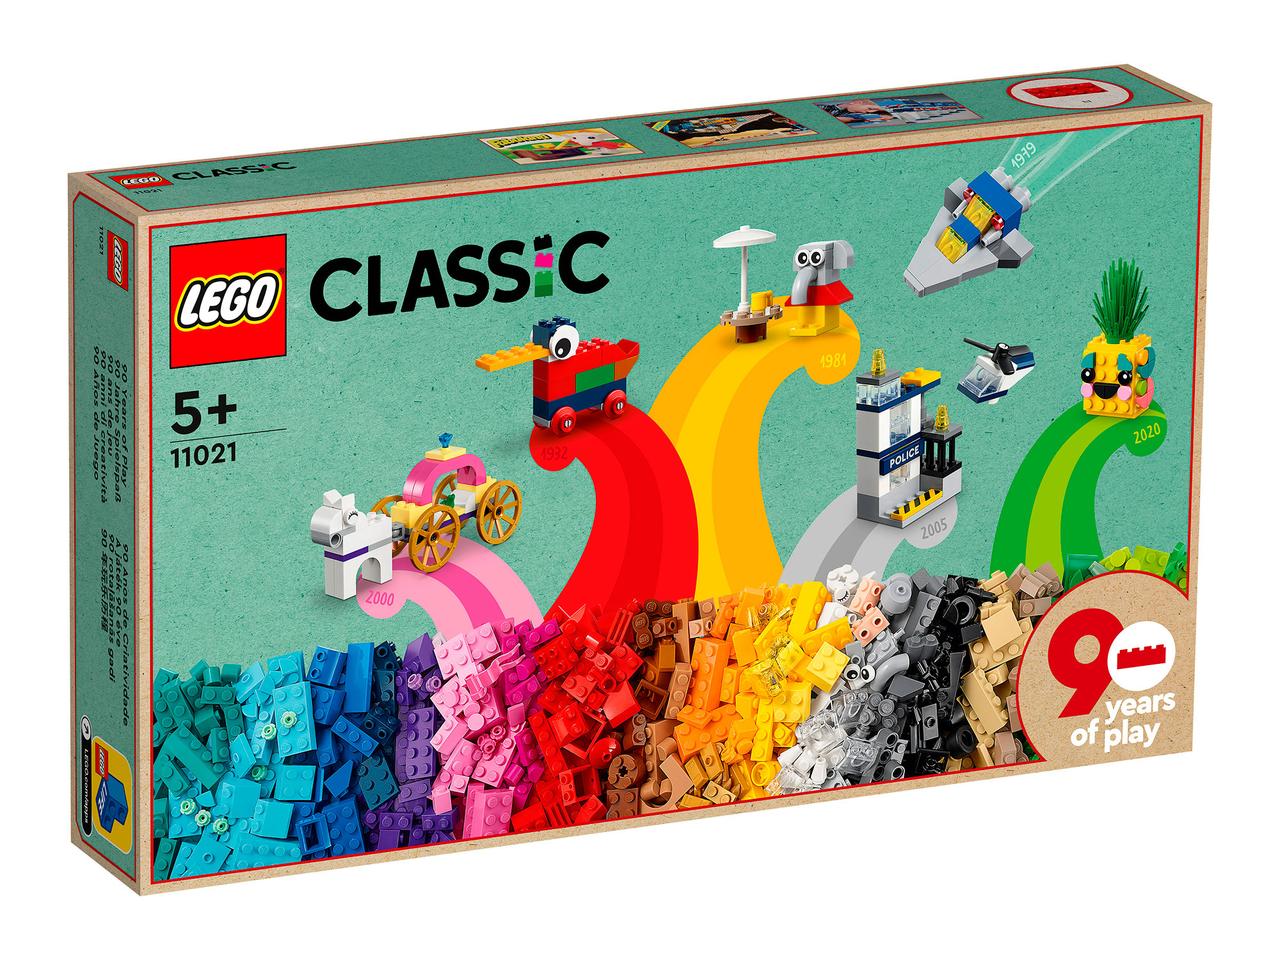 11021 Lego Classic 90 лет игры Юбилейный набор, Лего Классика